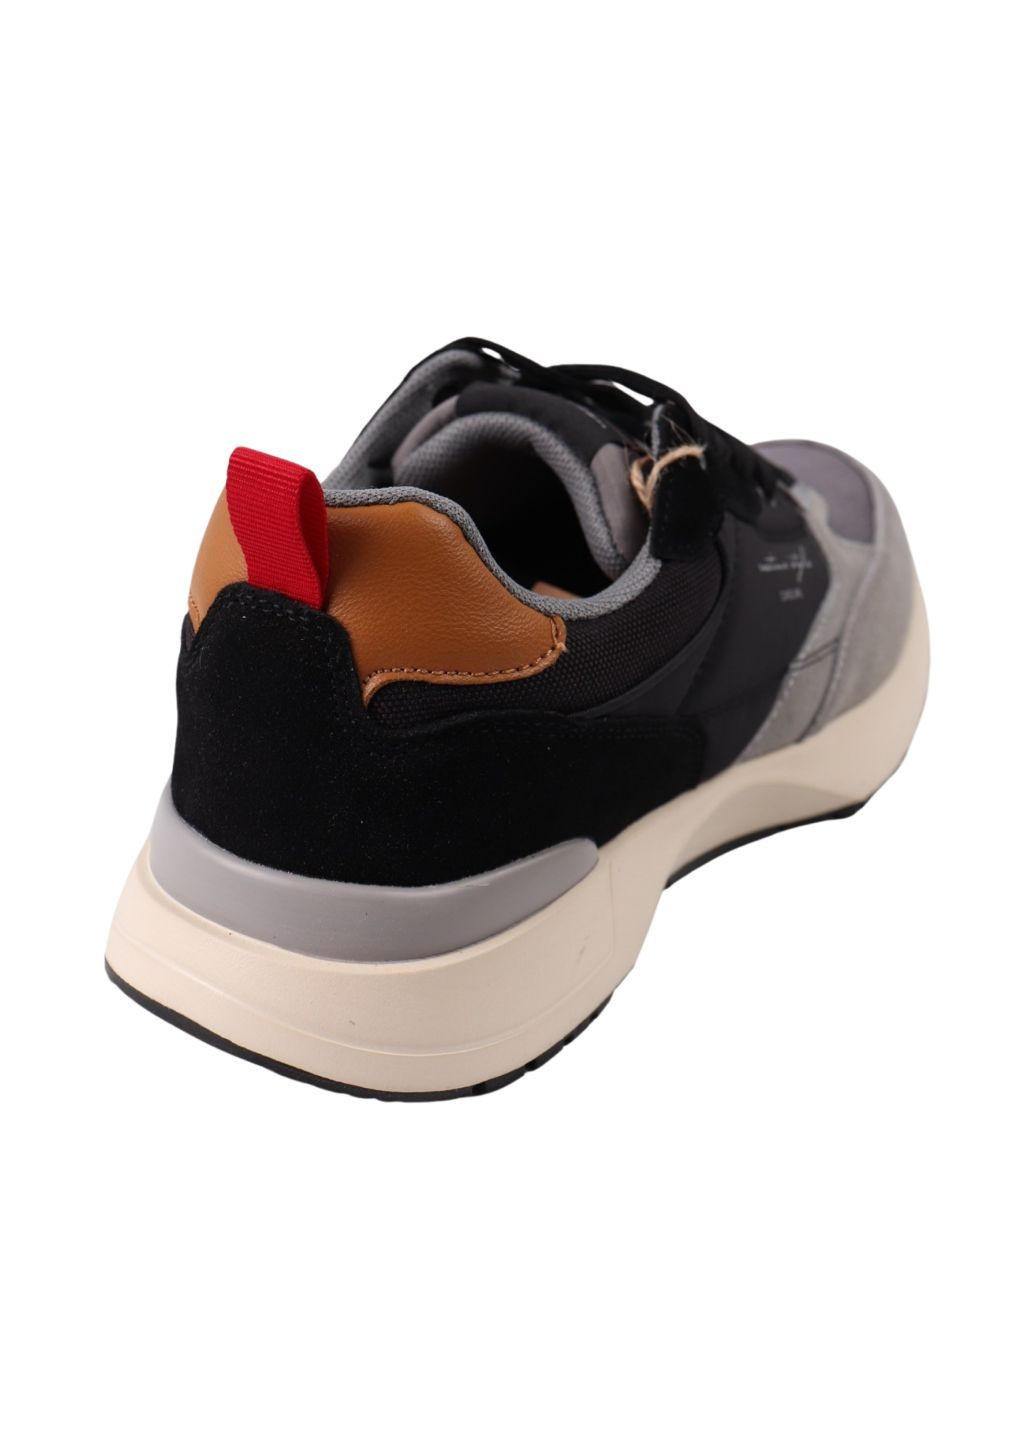 Черные кроссовки мужчкие черные текстиль Restime 250-24DK